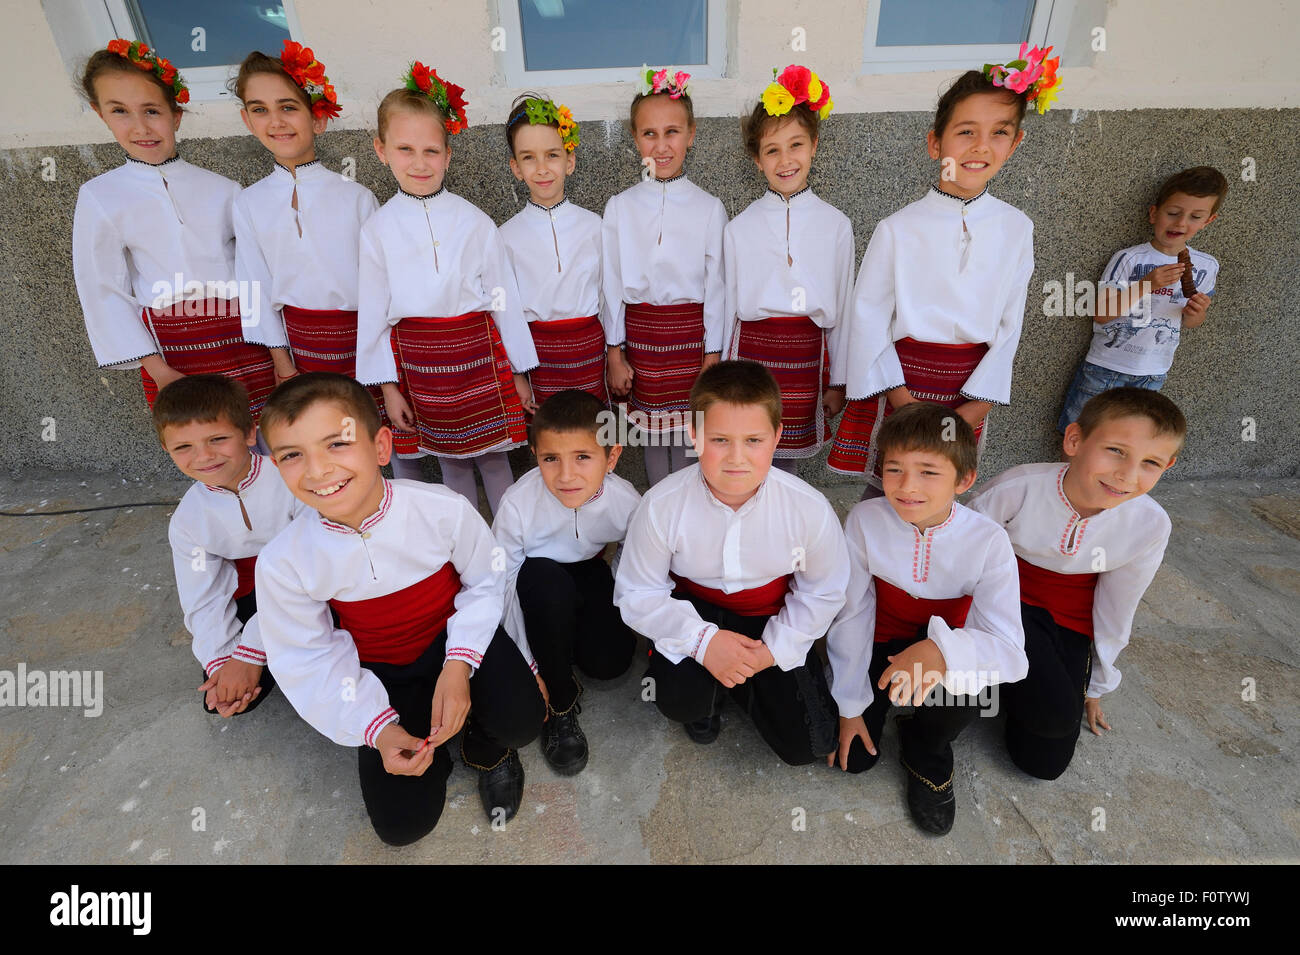 Kinder-Tanzgruppe, anlässlich der Eröffnung einer neuen Tahini-Produktion-Fabrik in Kondovo Dorf, östlichen Rhodopen Bulgarien Mai 2013. Stockfoto